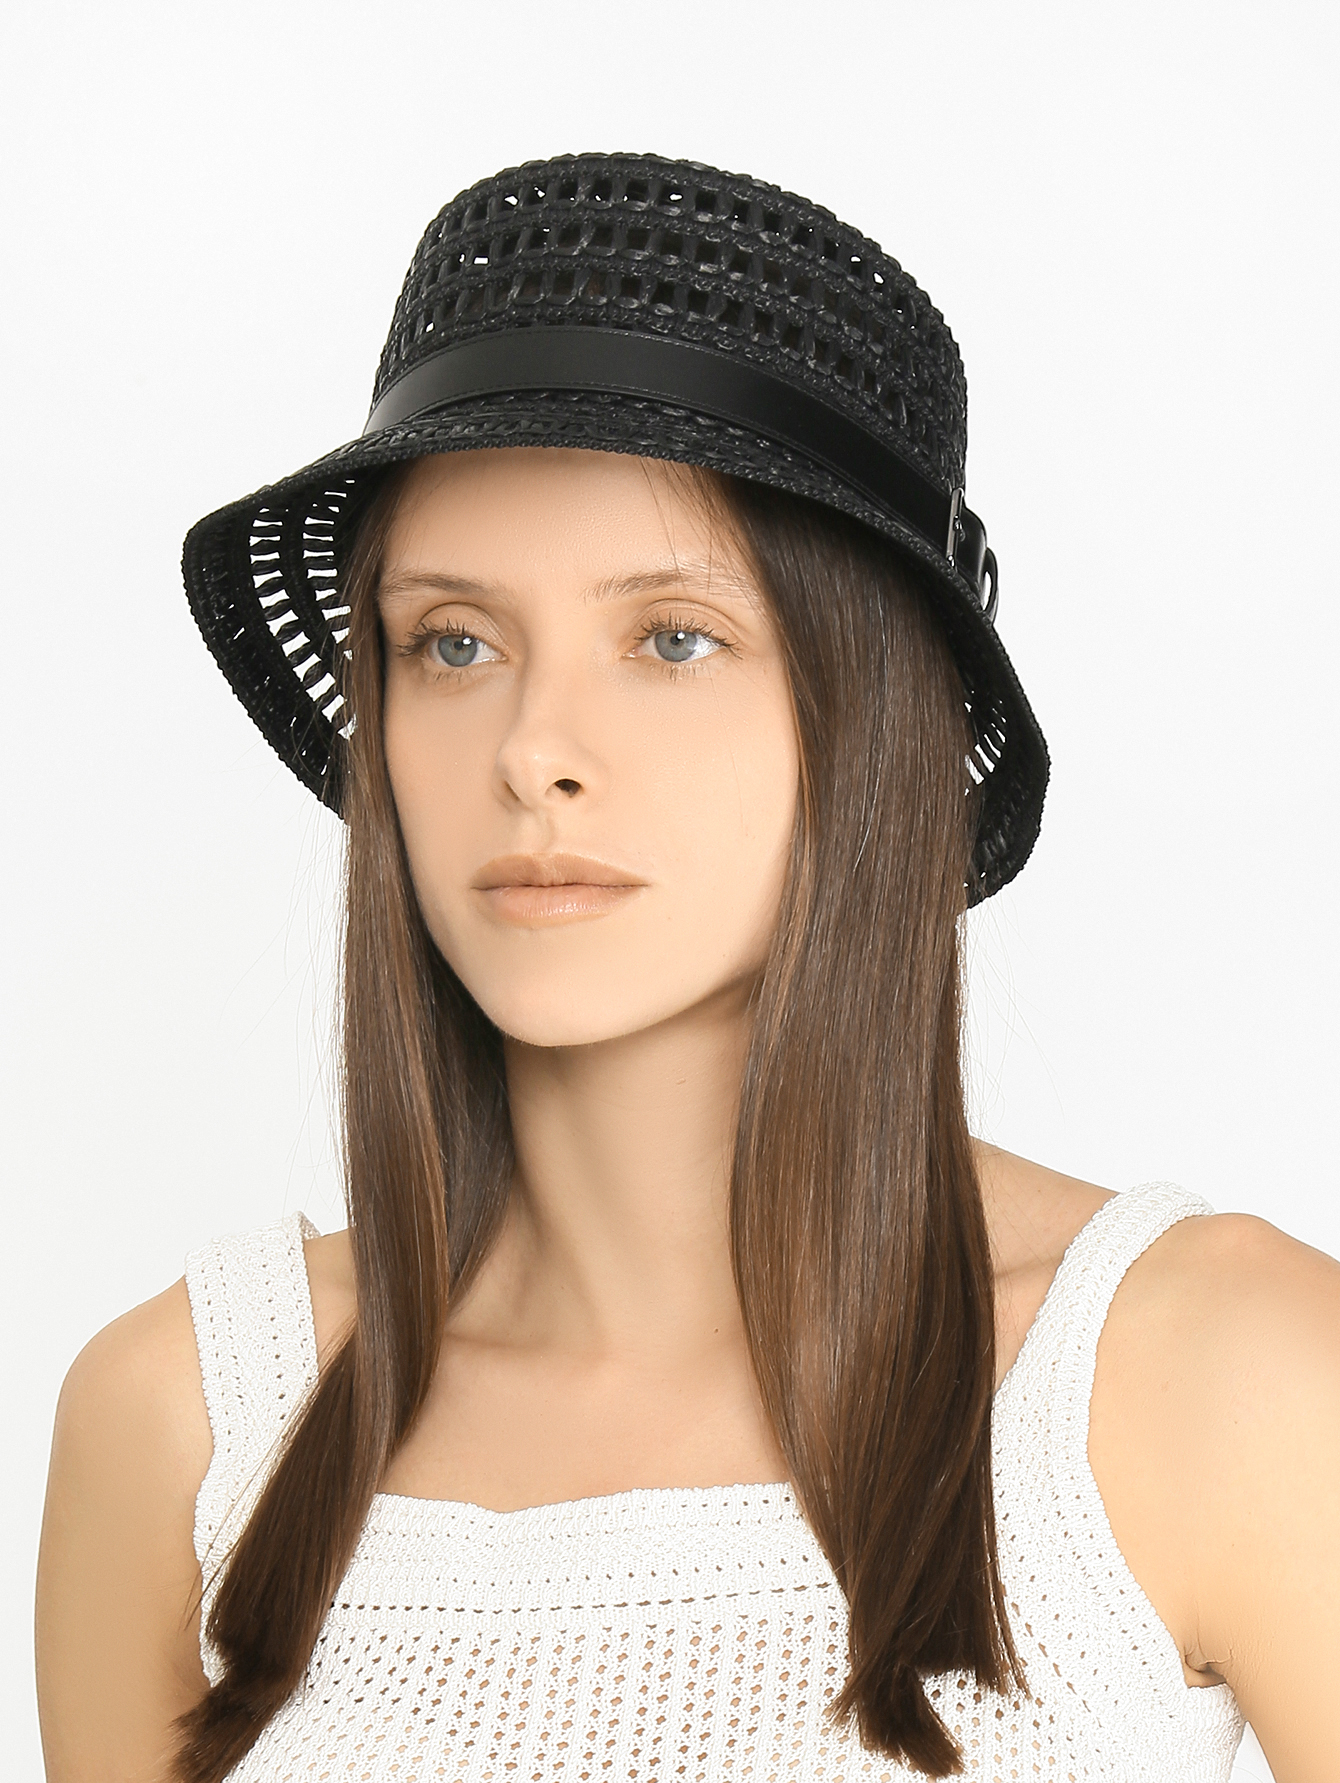 Купить женские шапки с помпоном в интернет-магазине по доступной цене